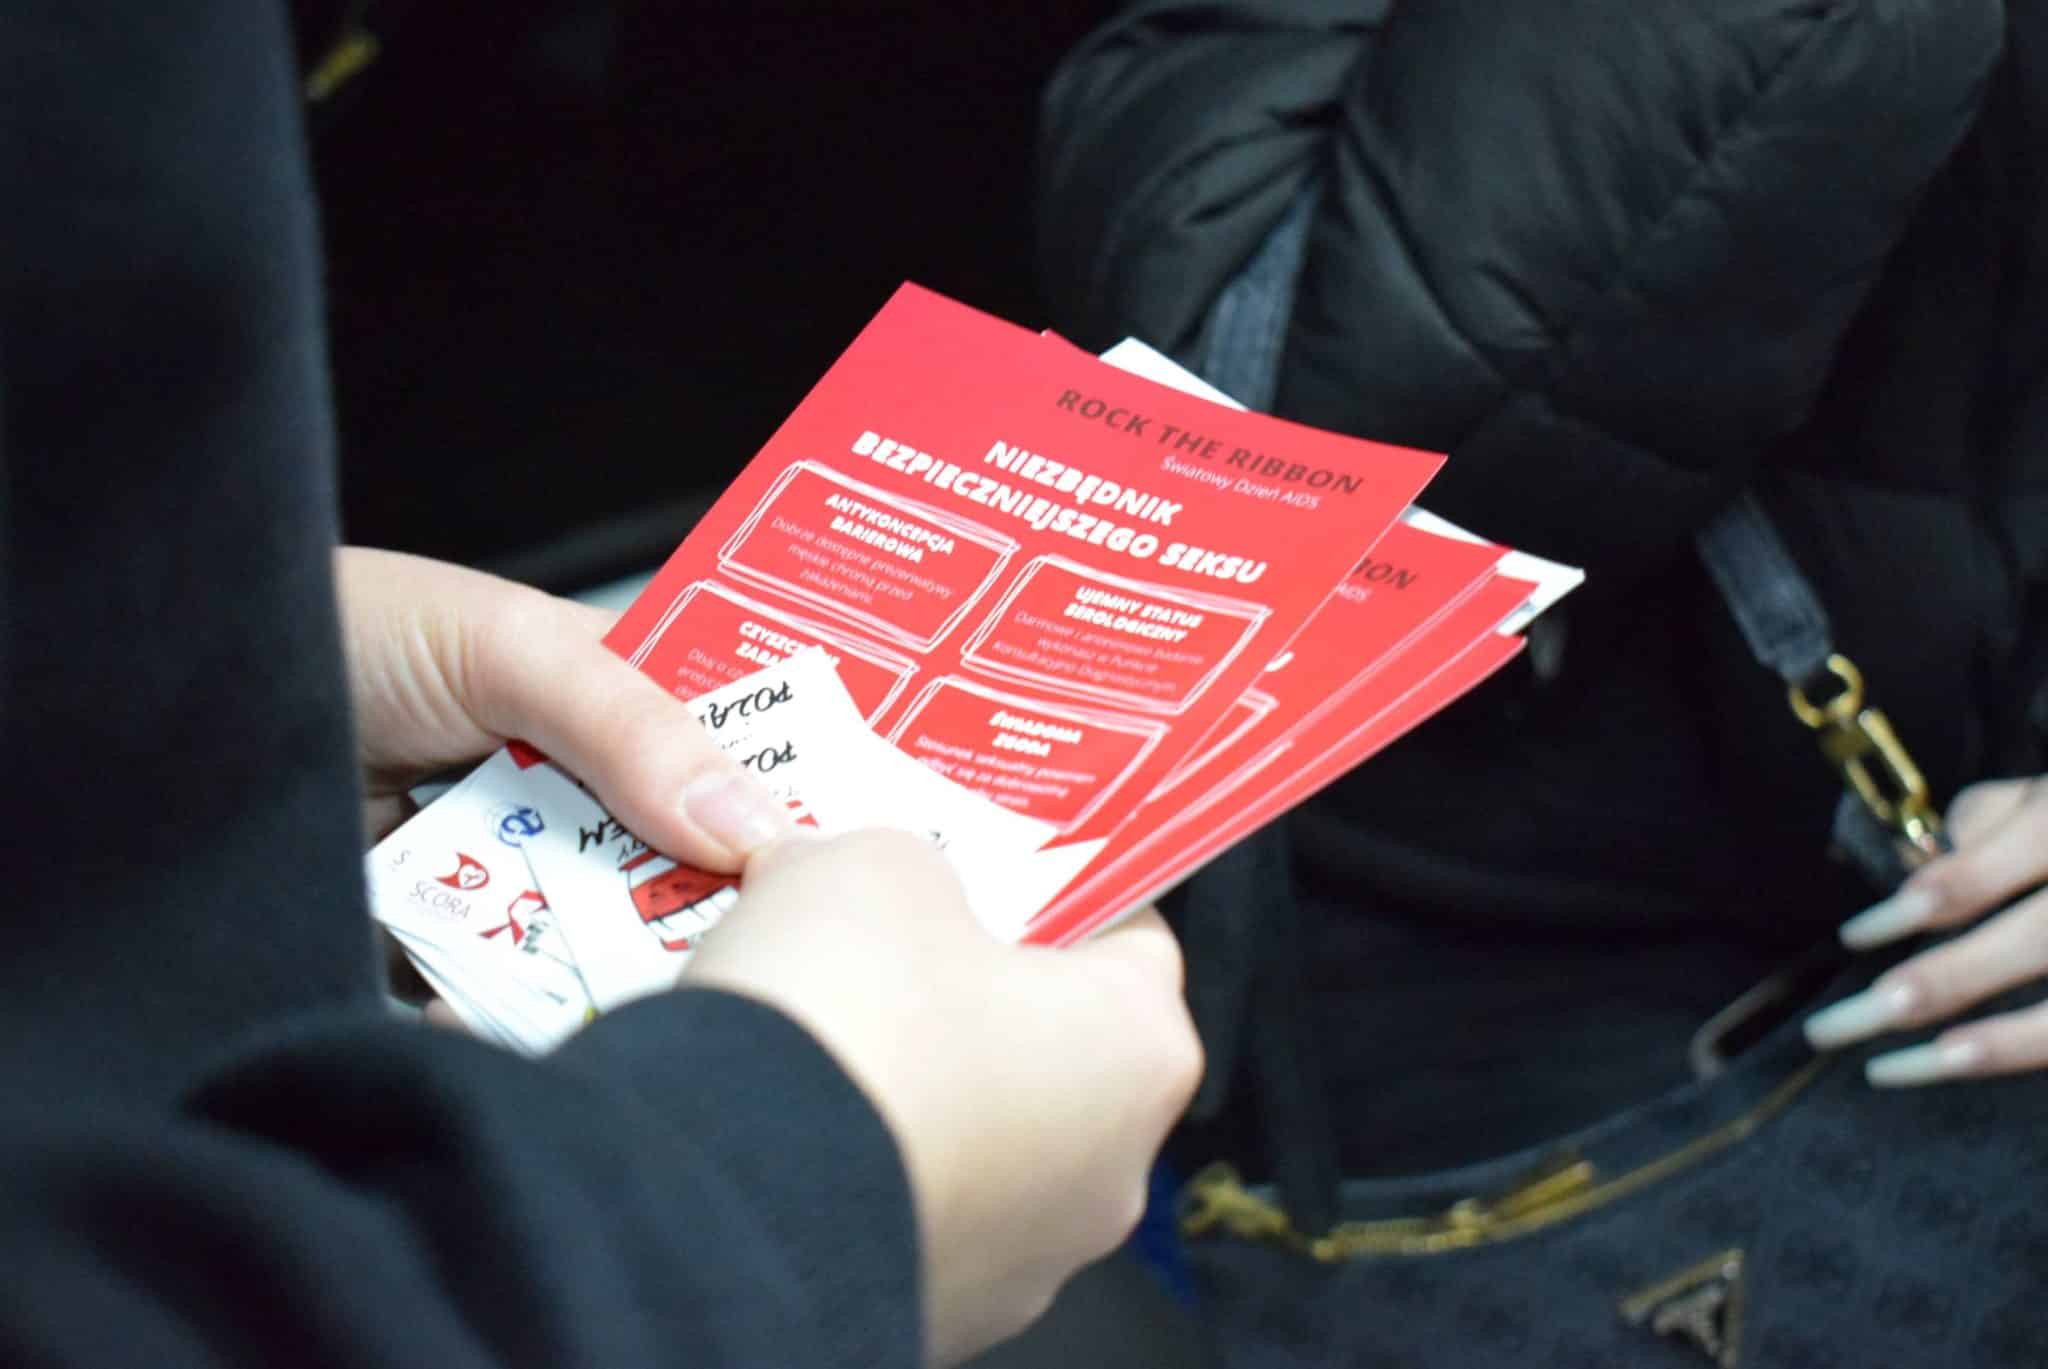 "Tramwaj zwany Pożądaniem": kampania edukacyjna o HIV startuje w Olsztynie zdrowie Olsztyn, Wiadomości, zShowcase